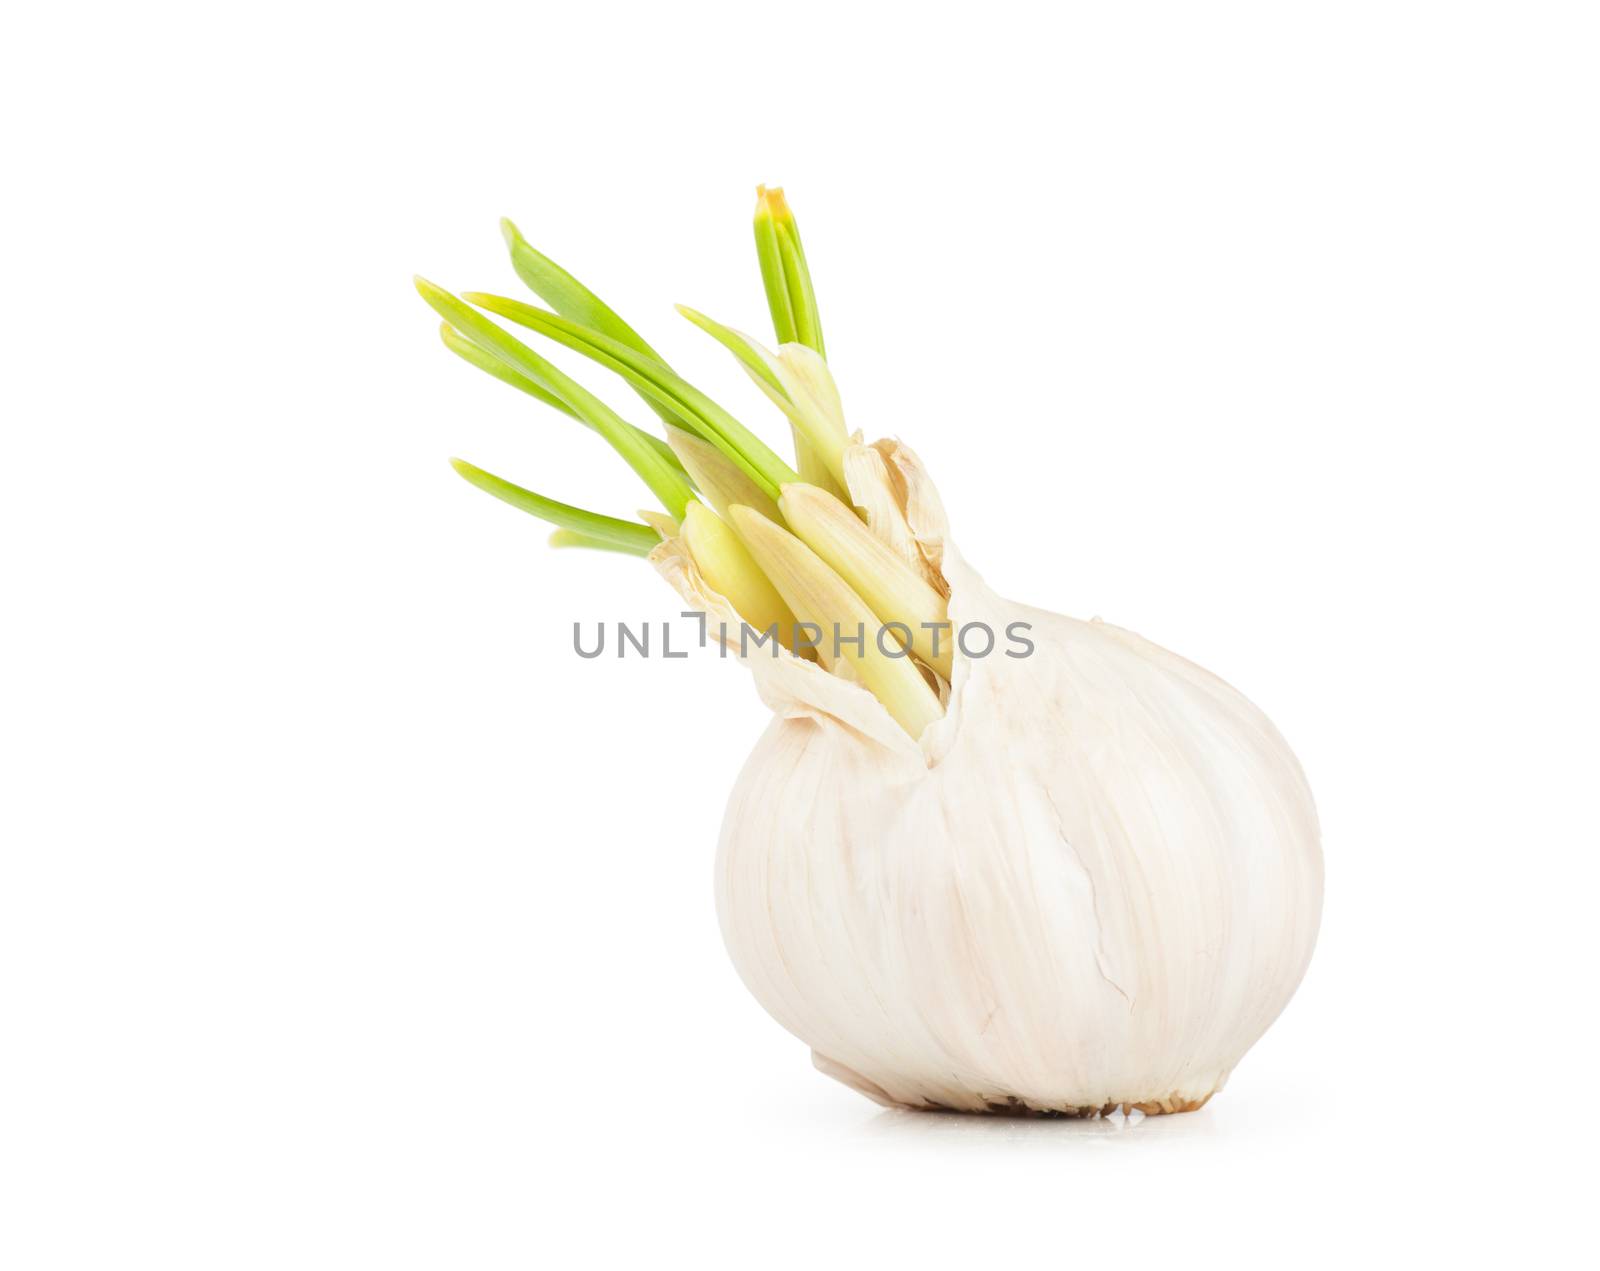 Garlic by AGorohov